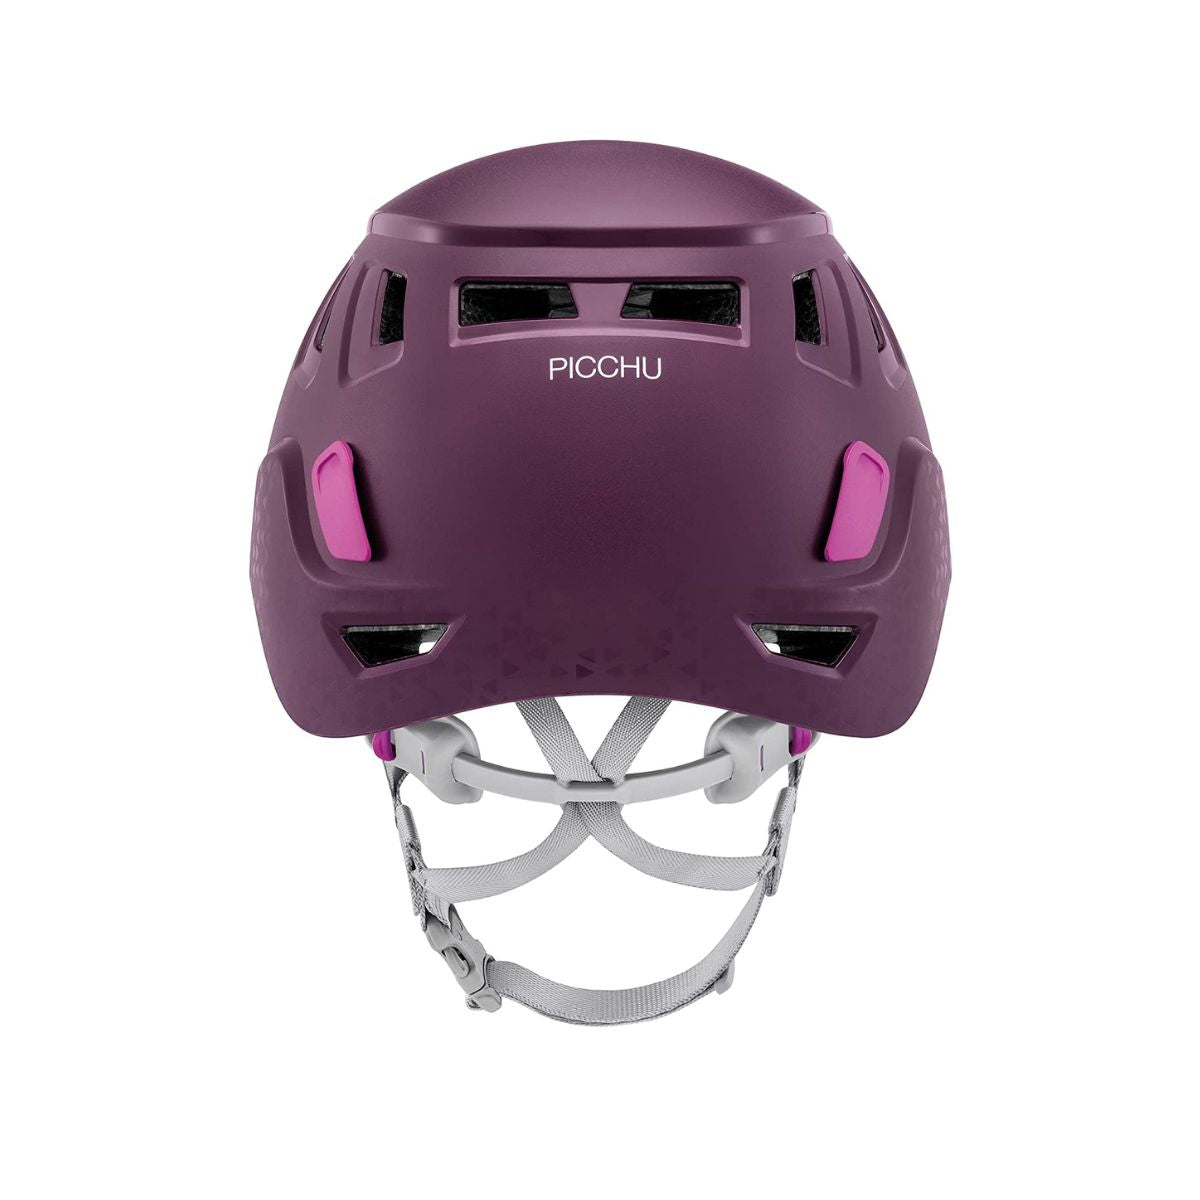 Picchu Helmet for Kids - Violet 3